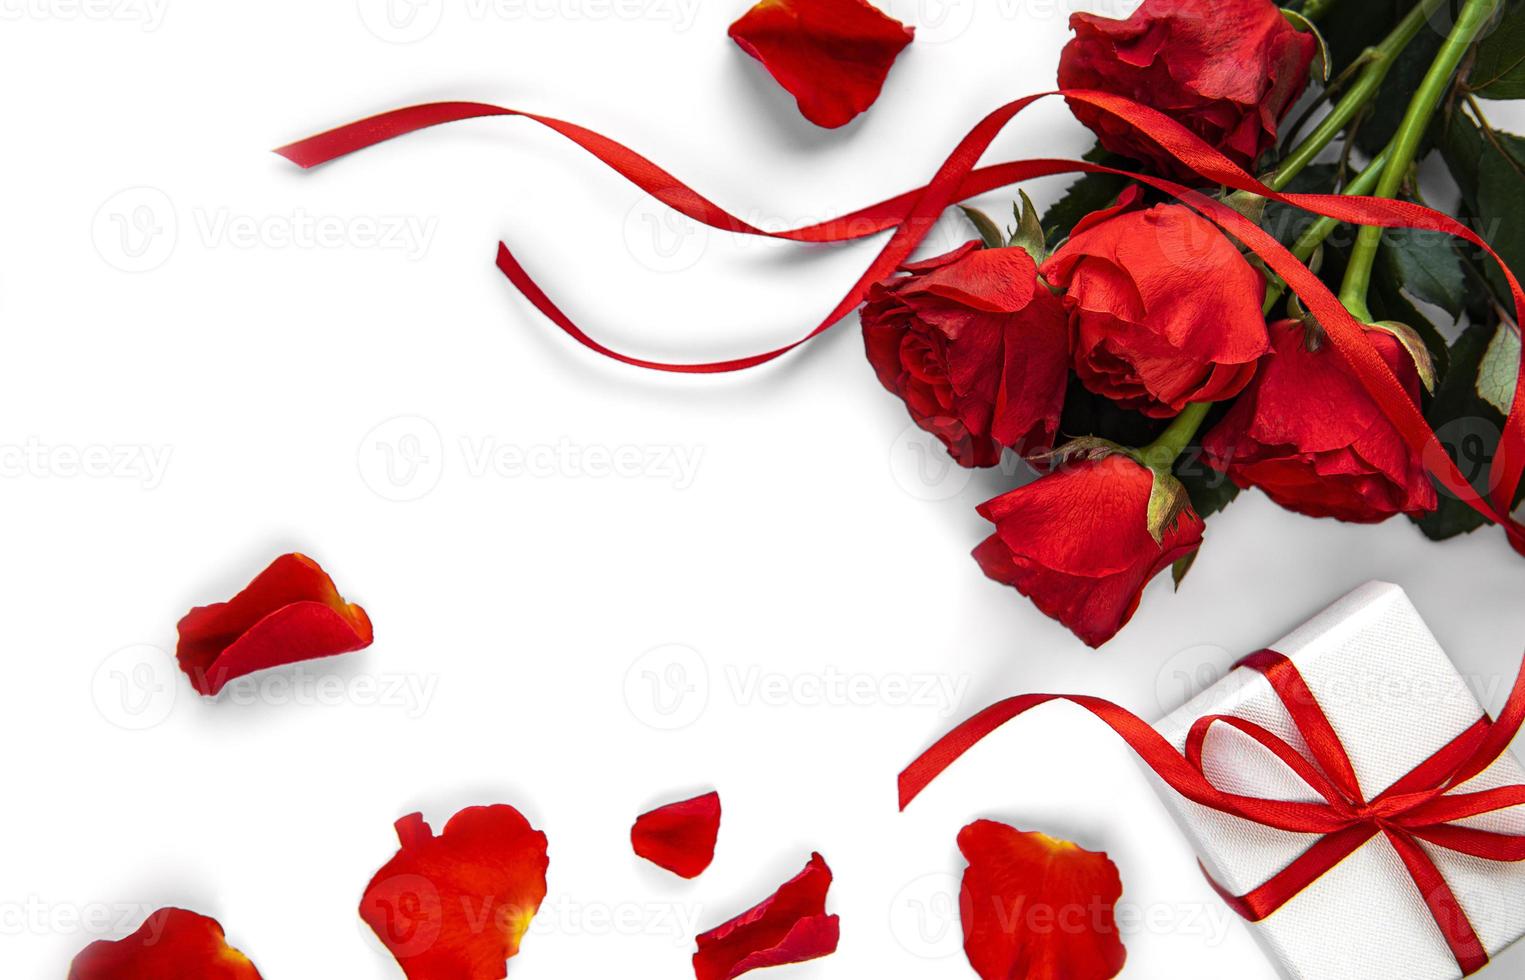 caixa de presente do dia dos namorados e buquê de rosas vermelhas foto